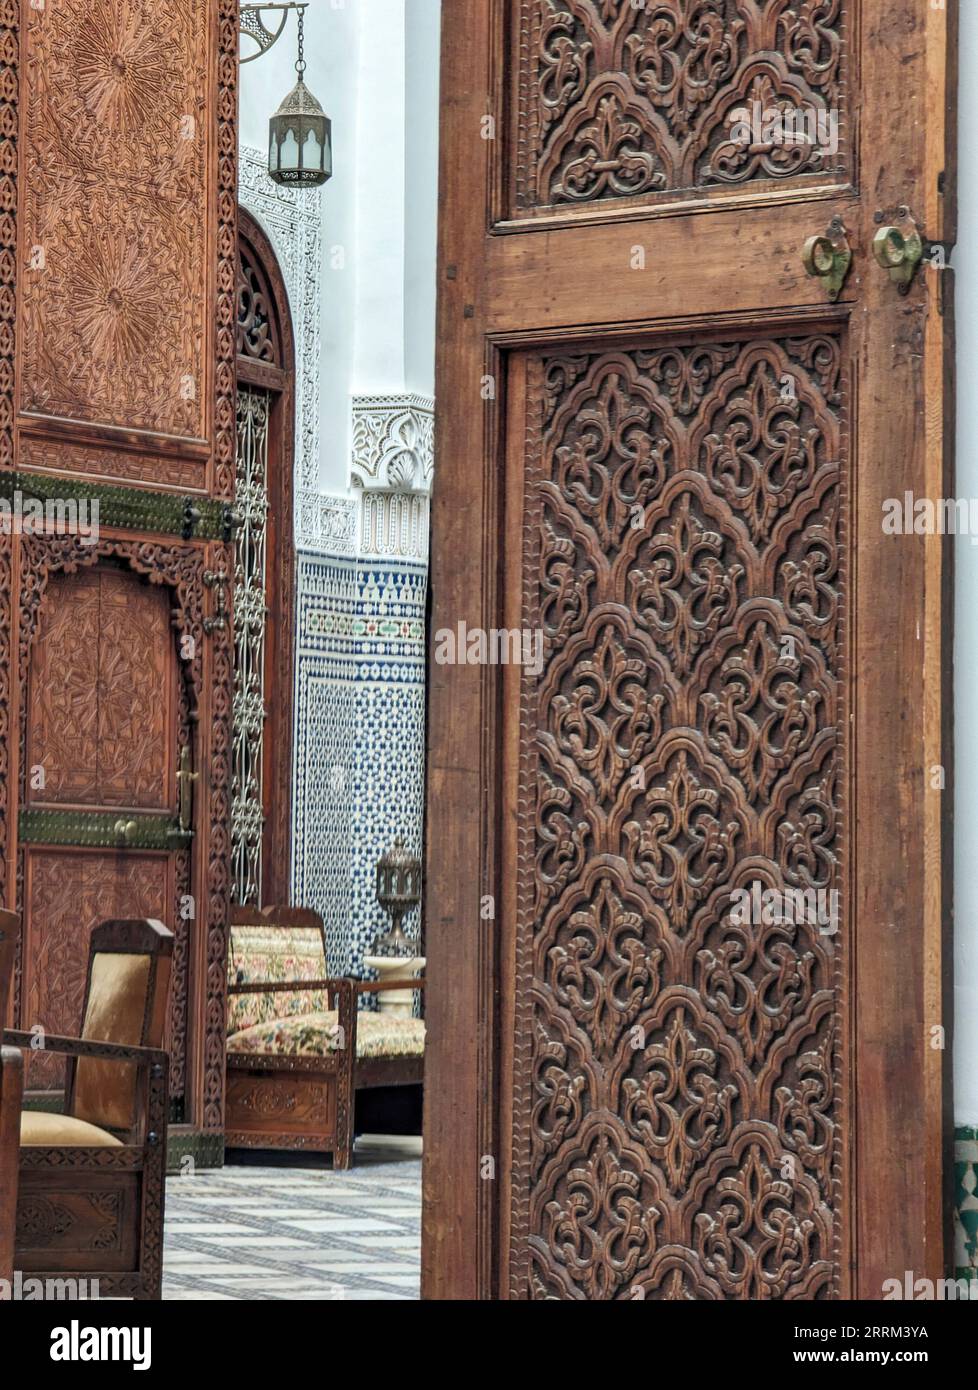 FES, Marocco, interno di un bellissimo palazzo marocchino in stile moresco, Marocco Foto Stock